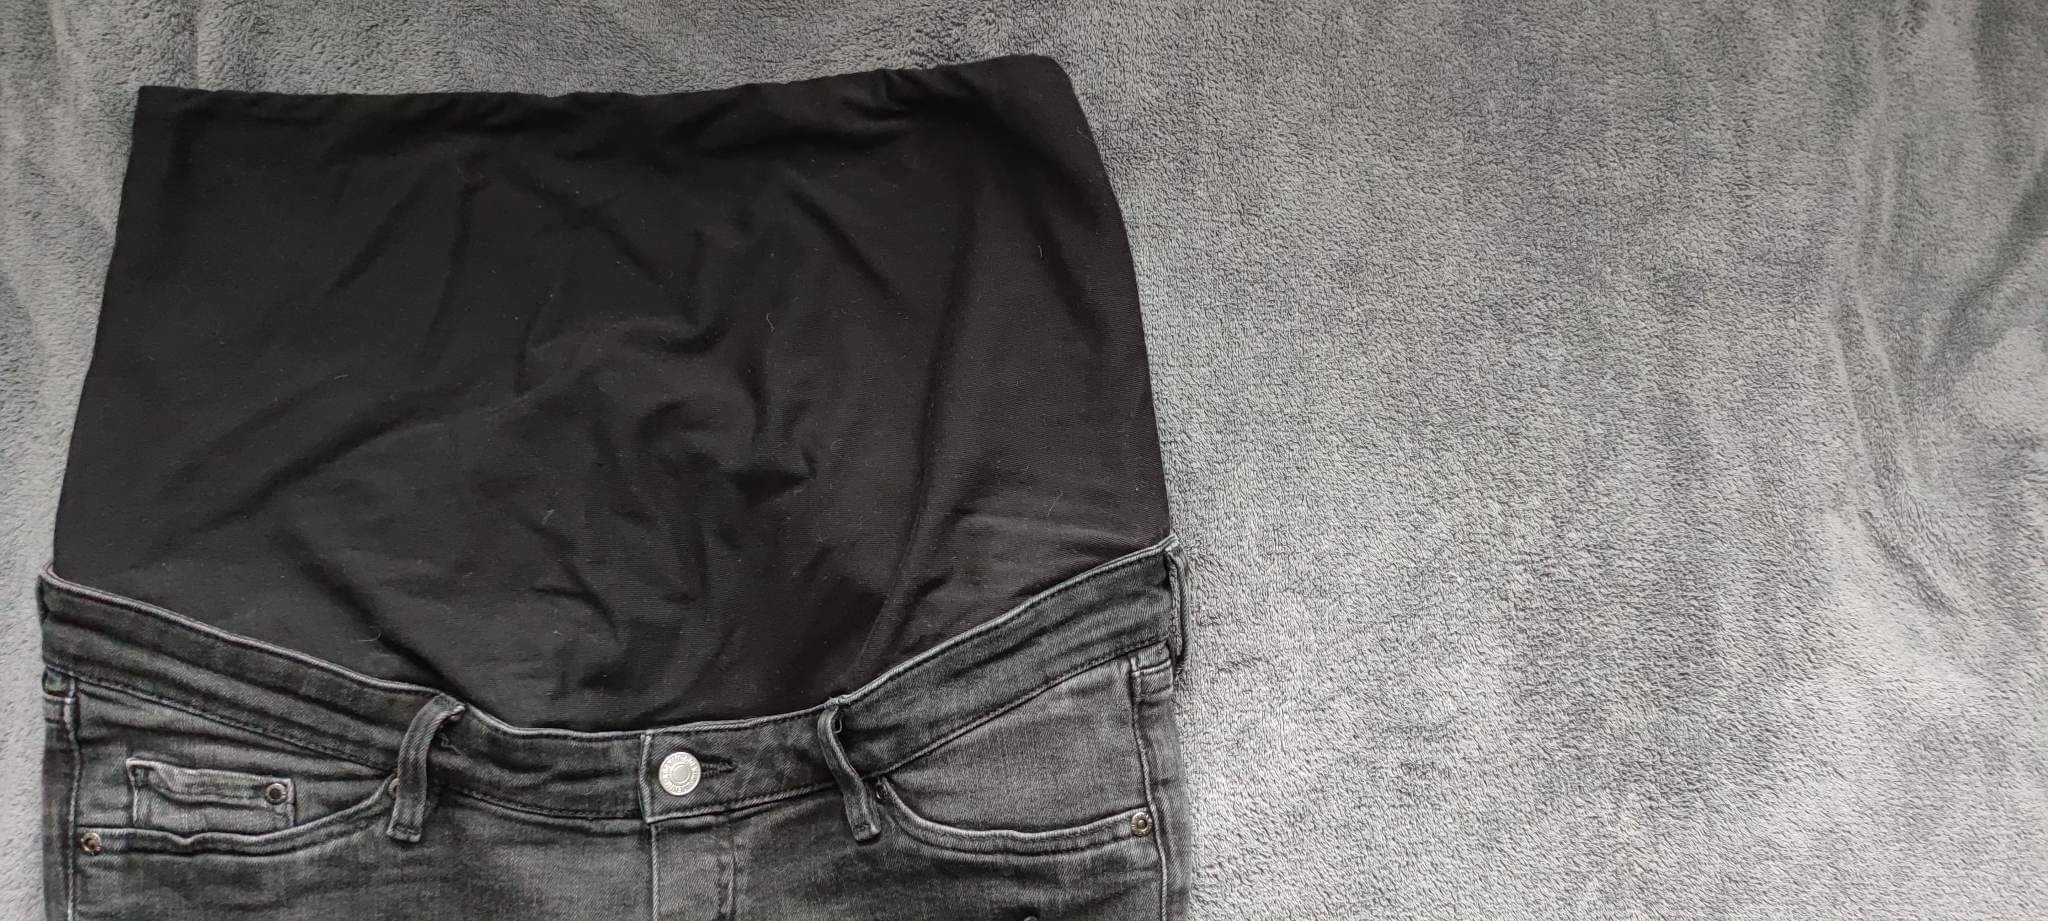 Czarne szare spodnie ciążowe drapowane Mama H&M hm jeans L 40